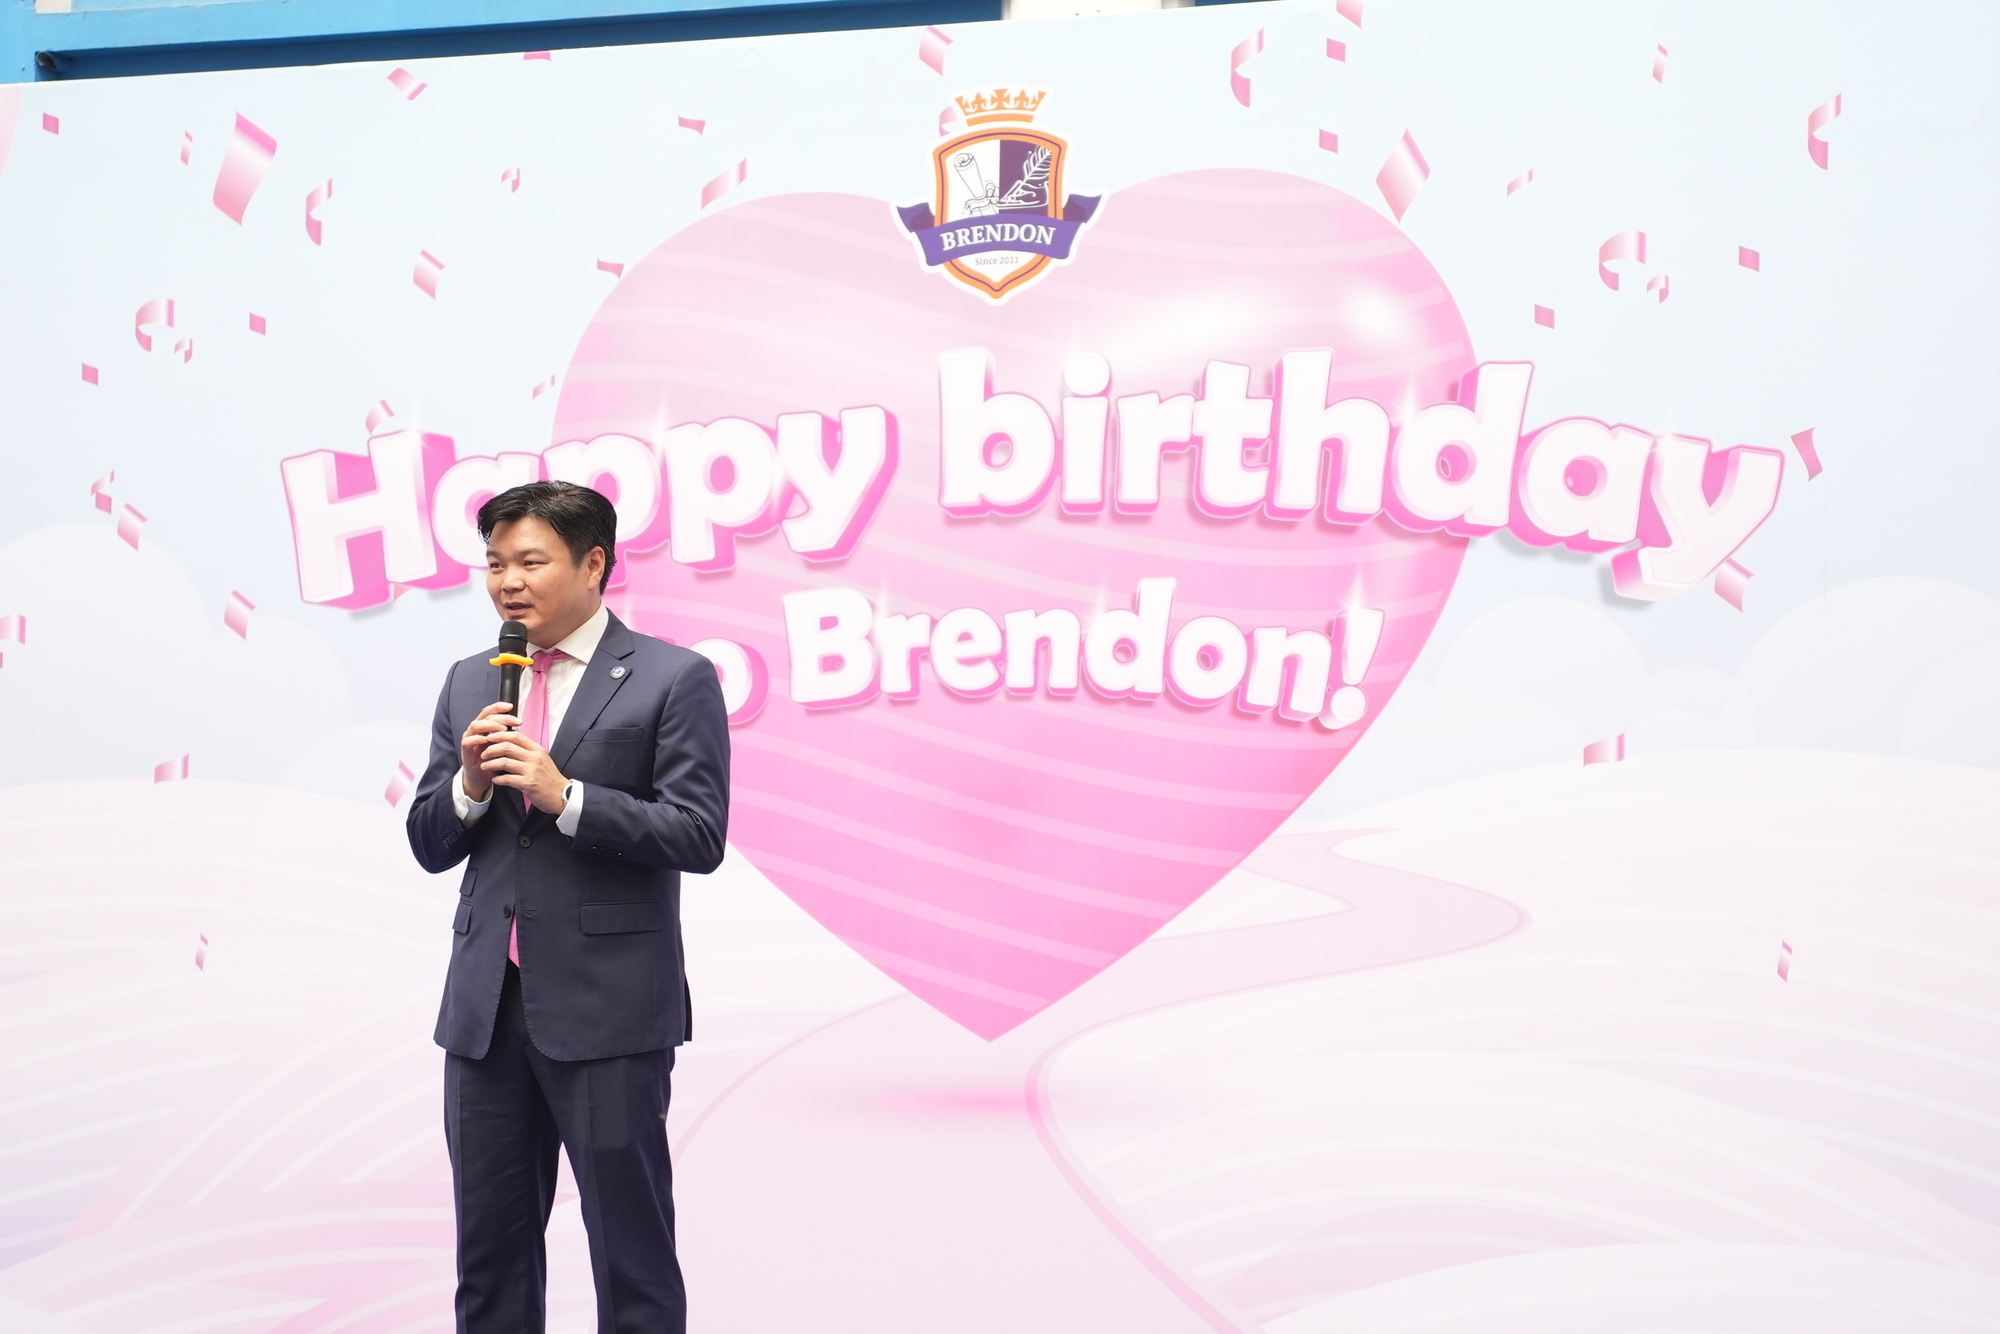 Ngày sinh nhật đầy sắc màu và cảm xúc tại Tiểu học Brendon- Ảnh 1.